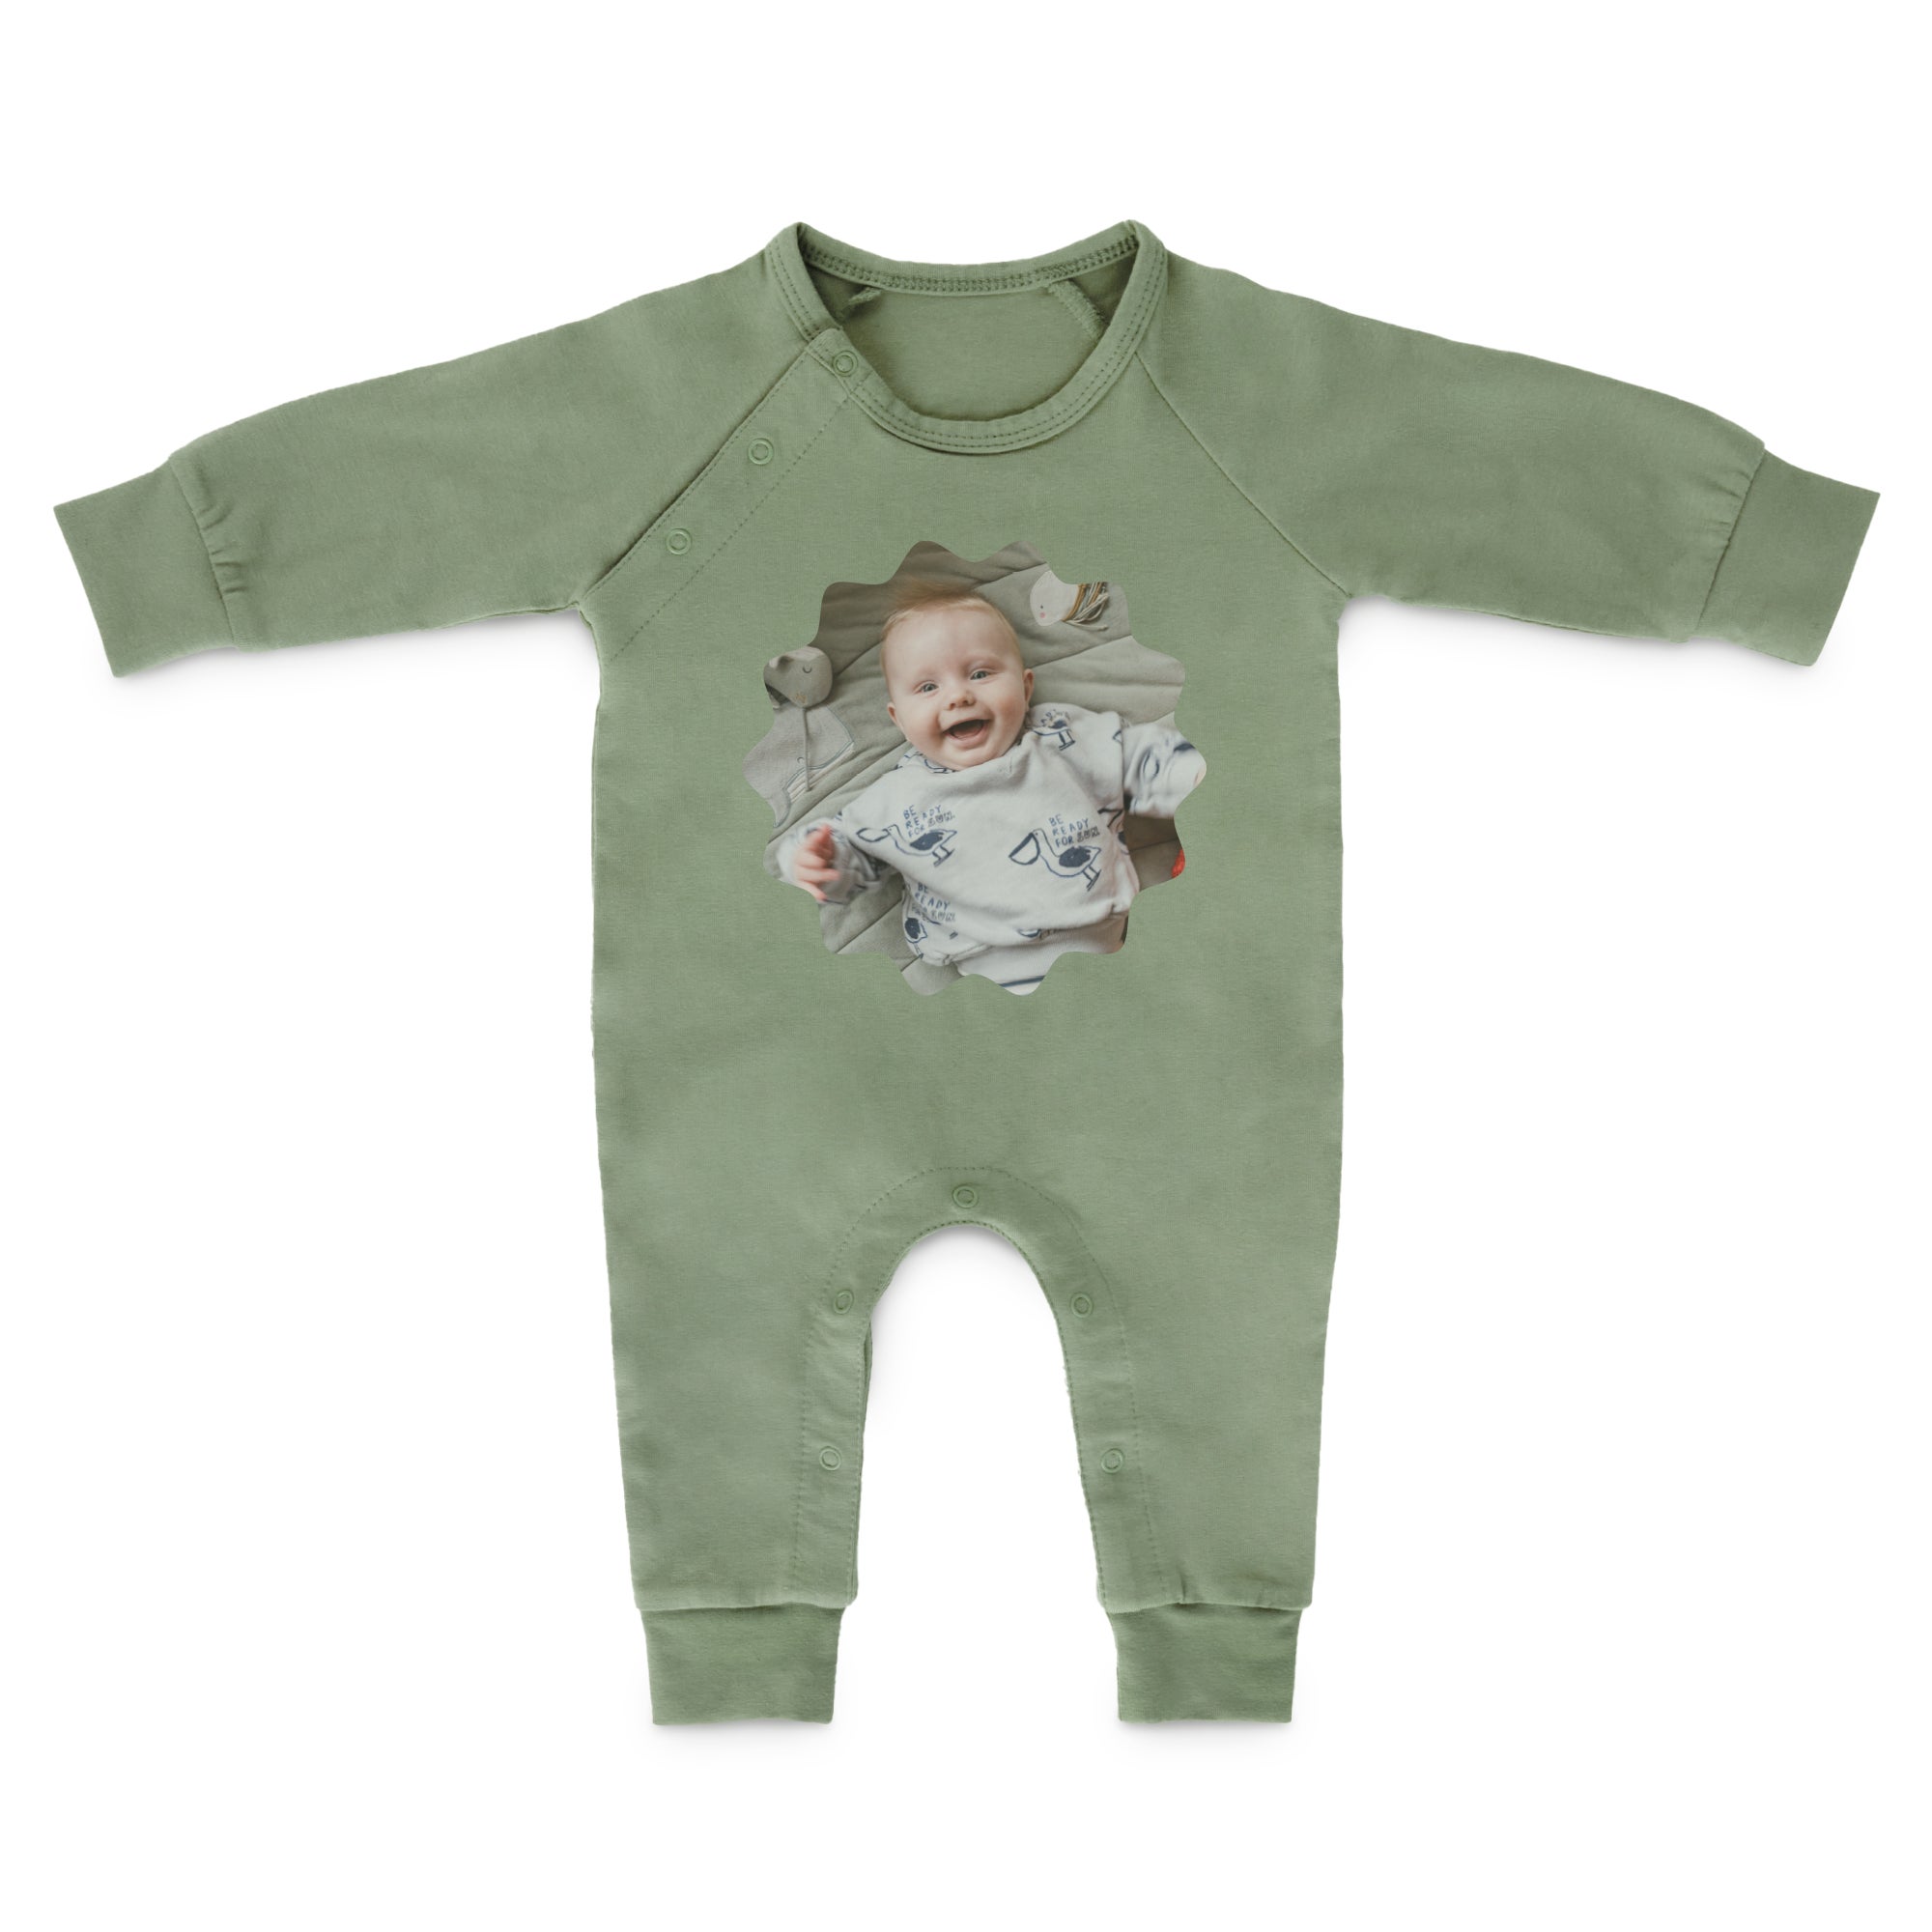 Babystrampler bedrucken Grün 50 56  - Onlineshop YourSurprise